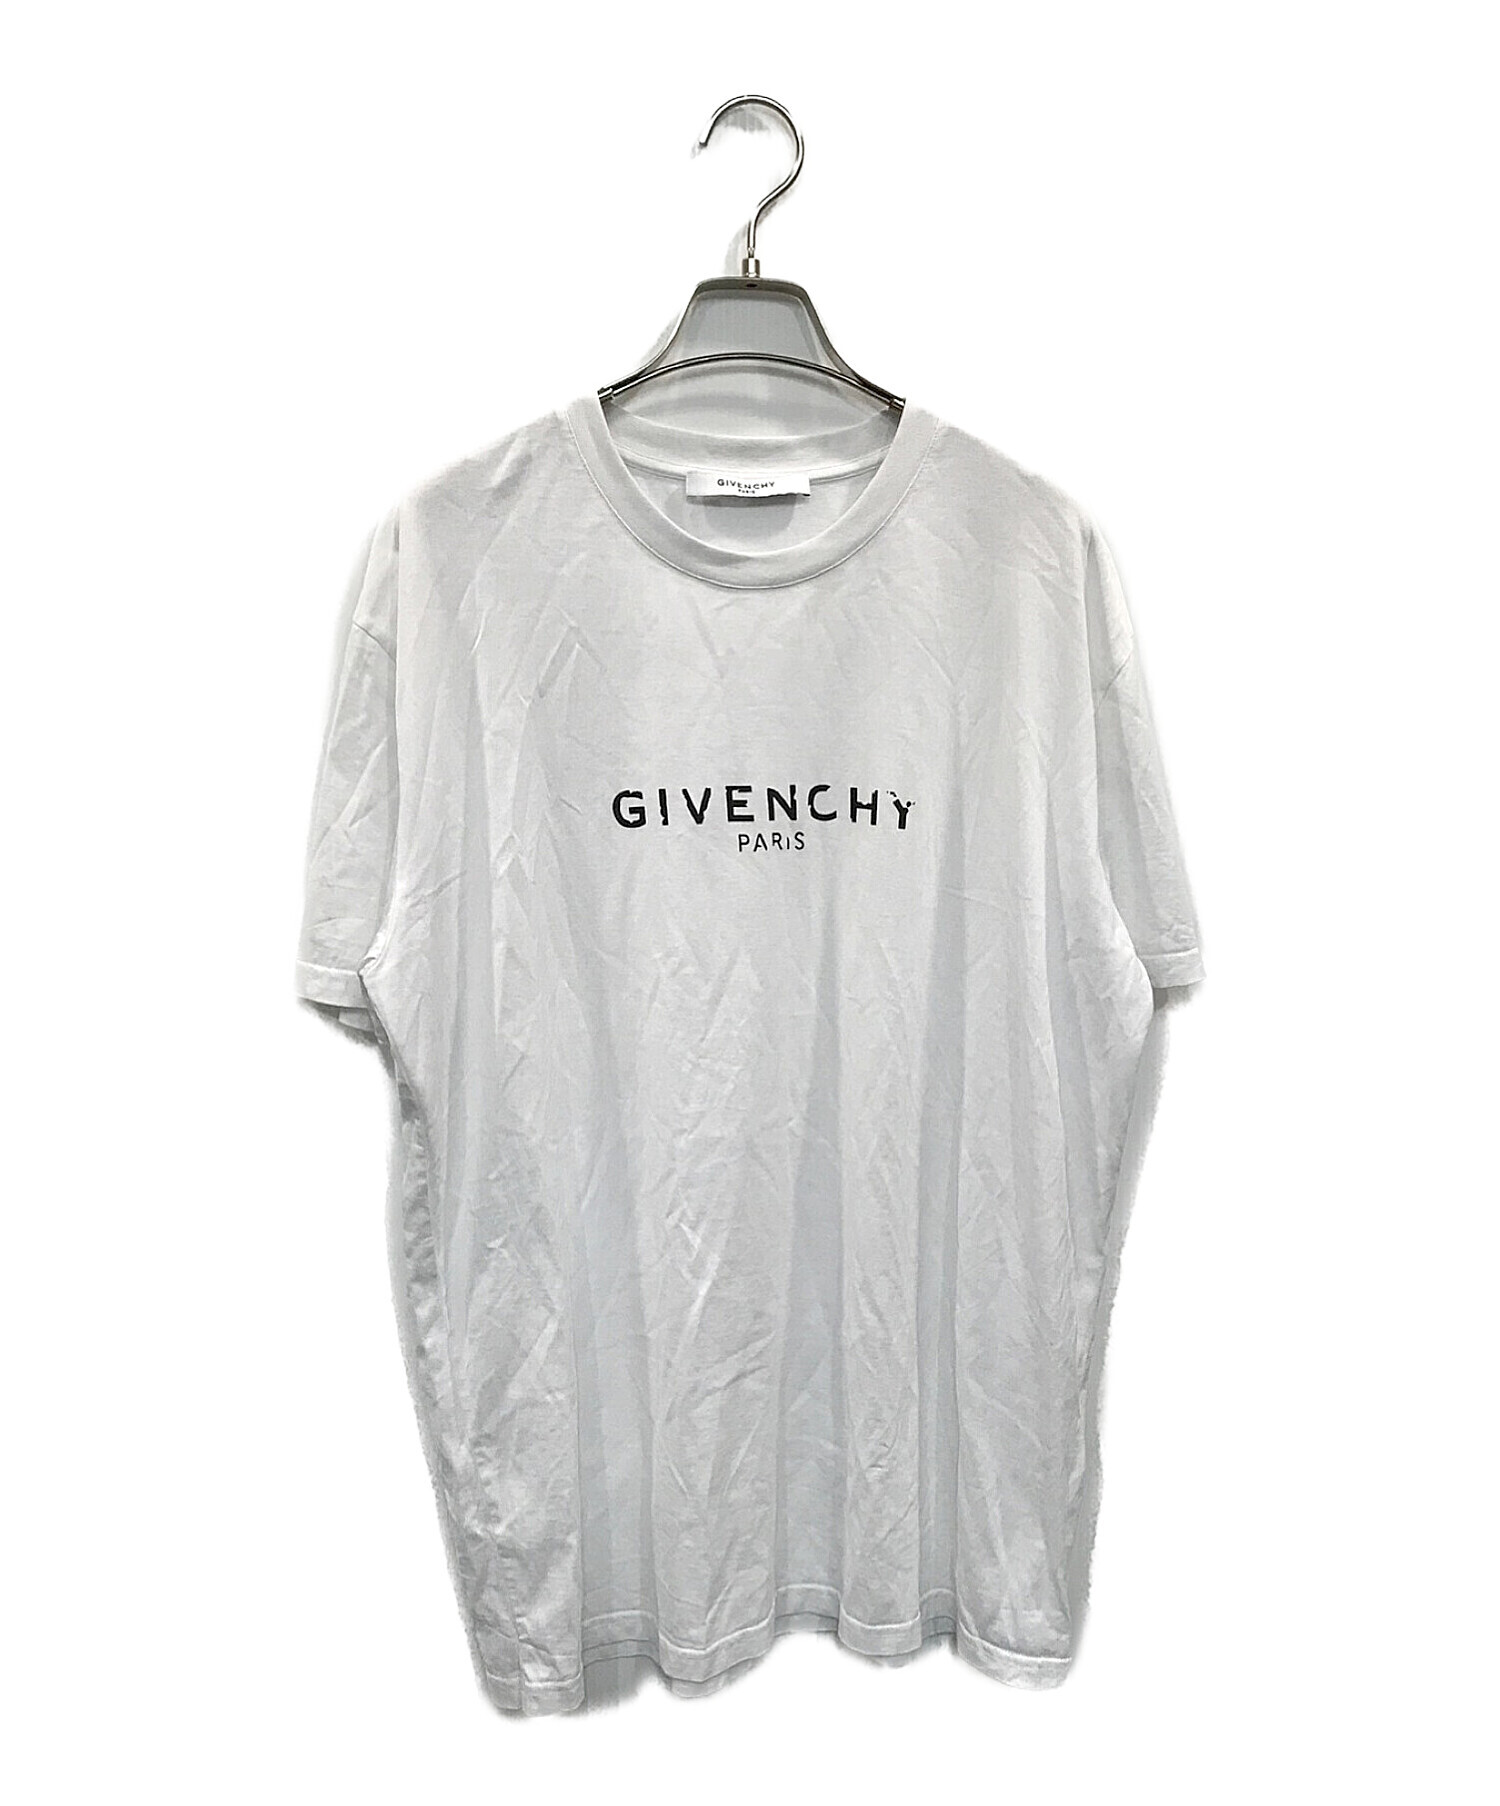 GIVENCHY (ジバンシィ) ヴィンテージロゴプリントTシャツ ホワイト サイズ:S